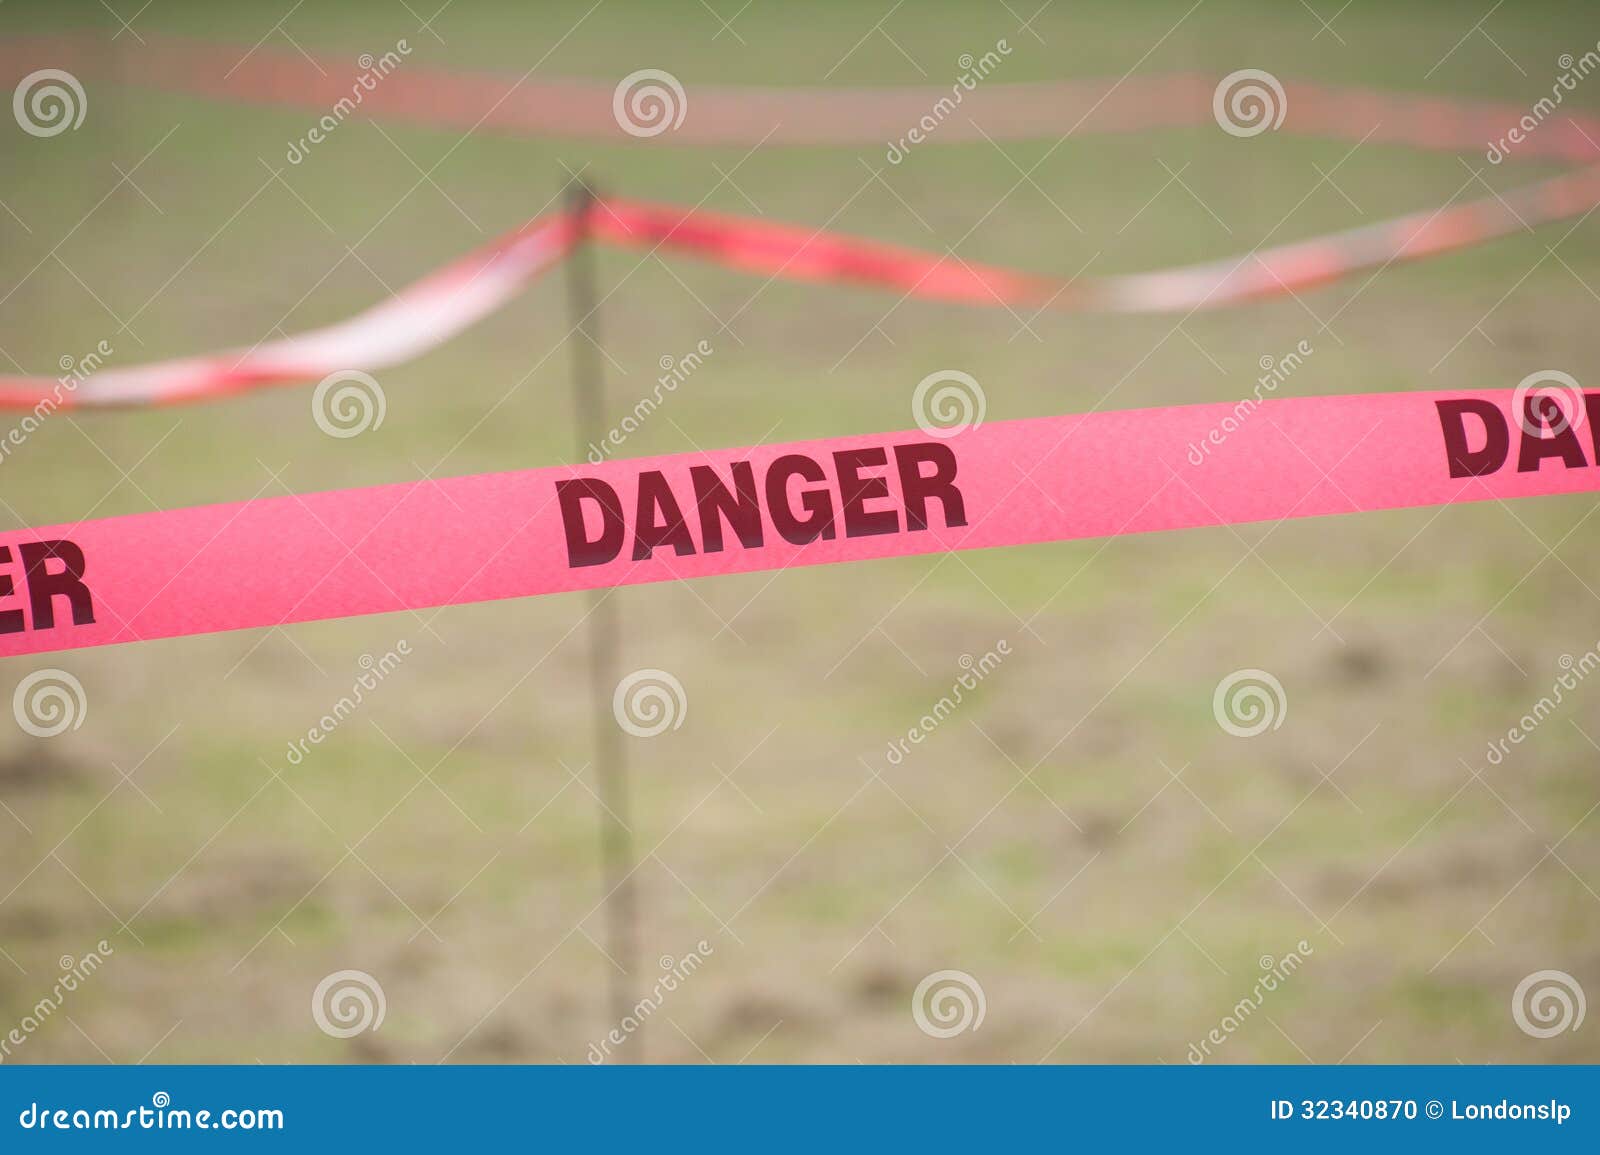 danger boundary tape in a field.